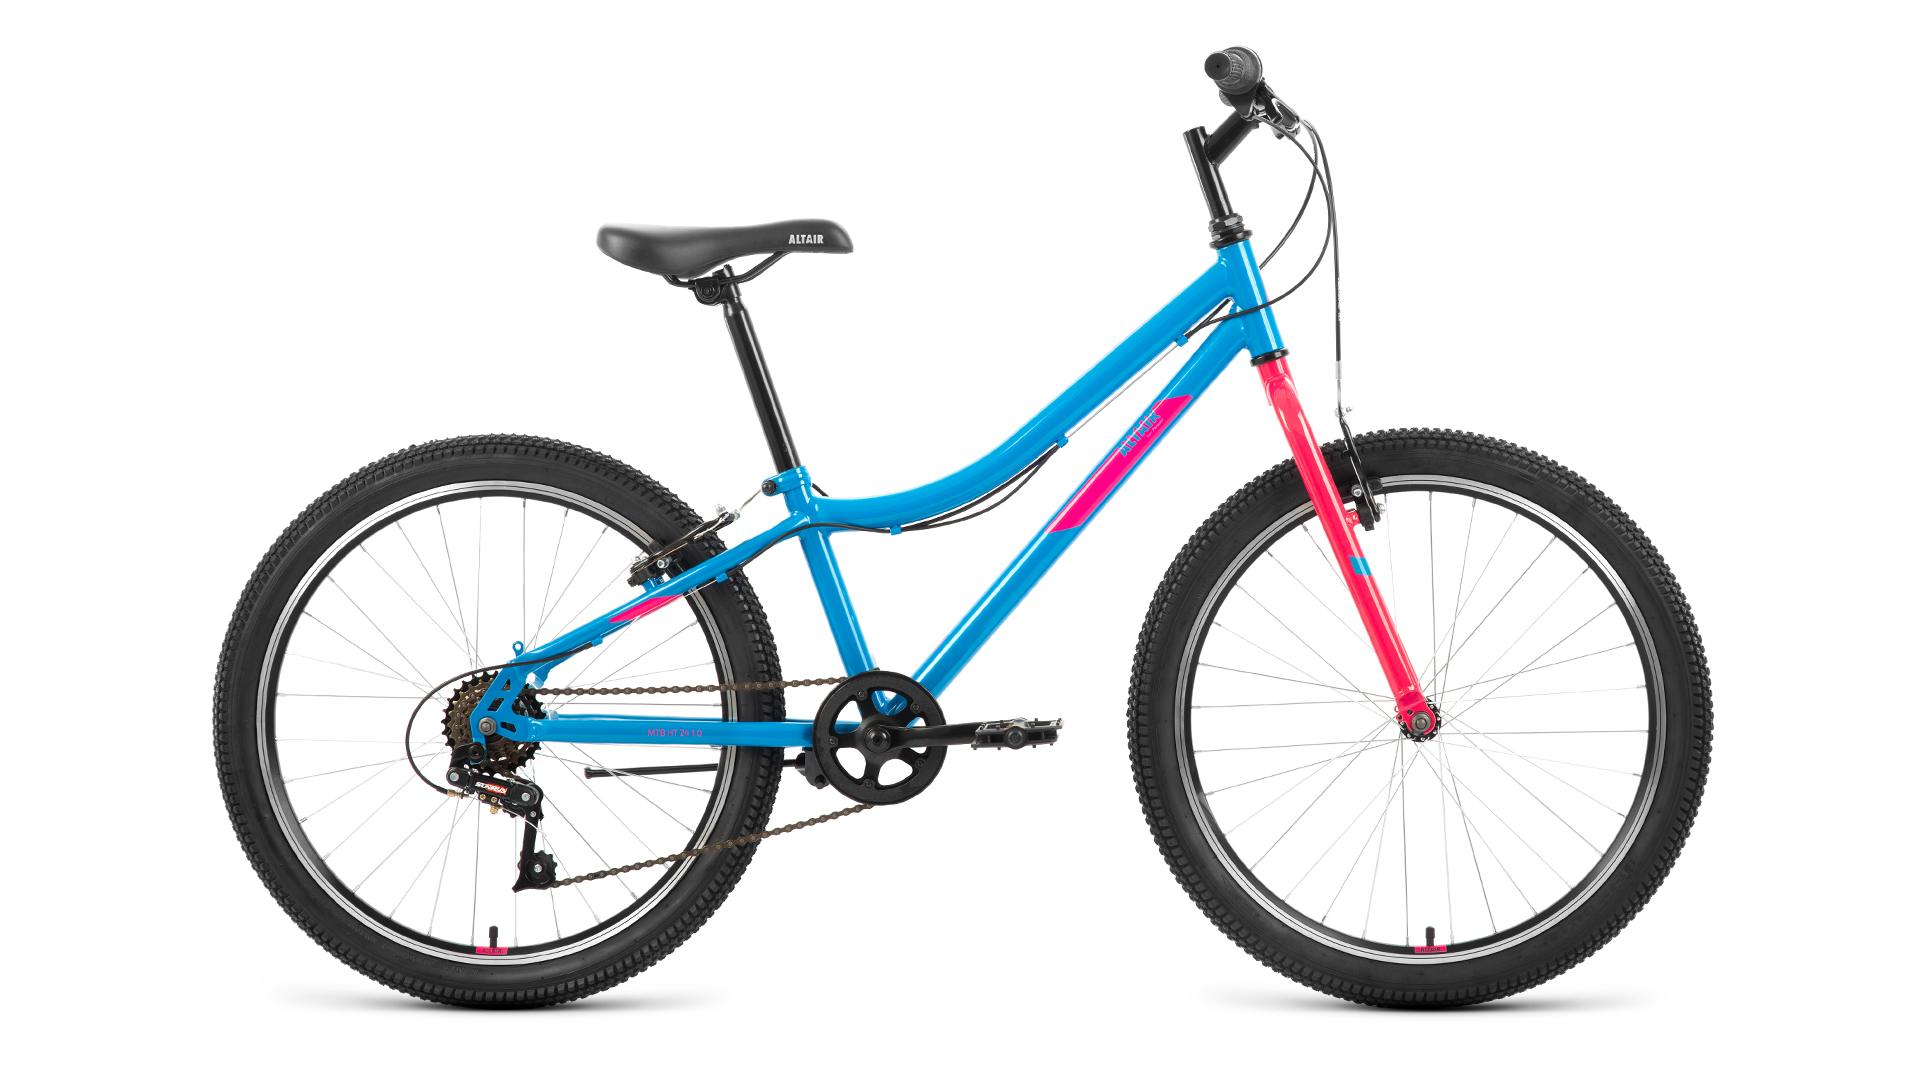 Подростковый велосипед Altair MTB HT 24 1.0, год 2022, цвет Голубой-Розовый